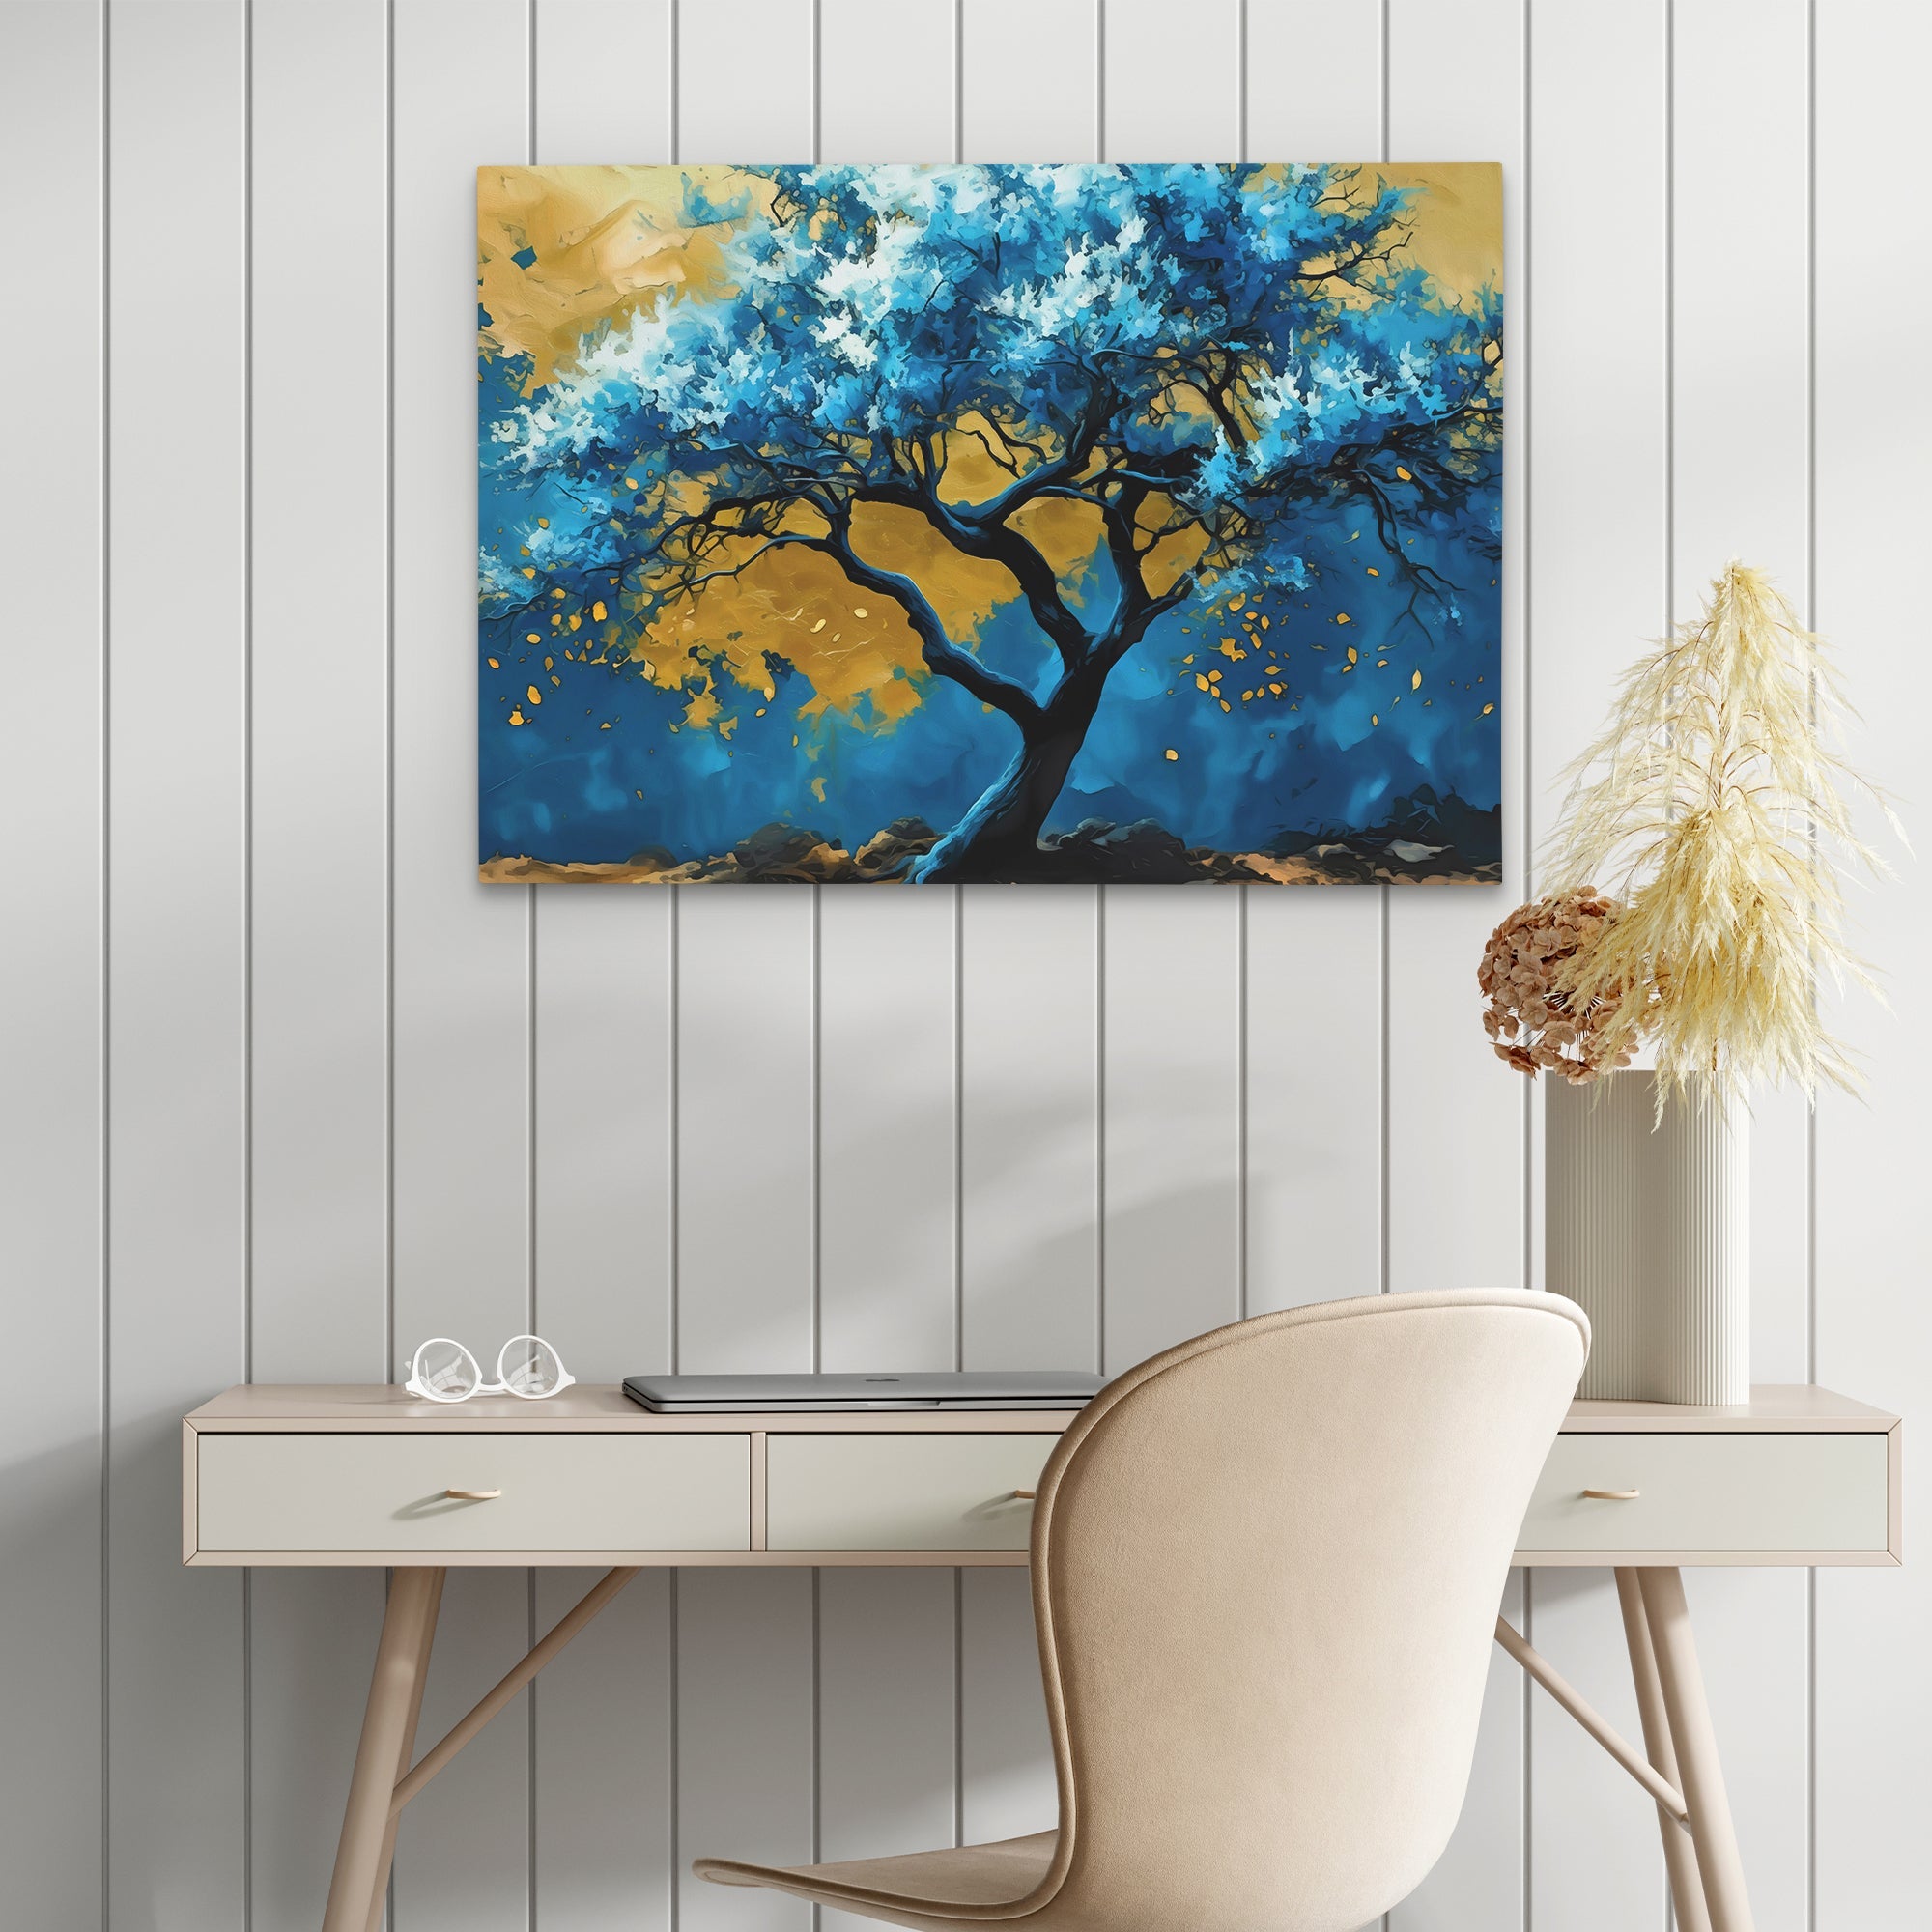 Blue Gold Tree - Luxury Wall Art